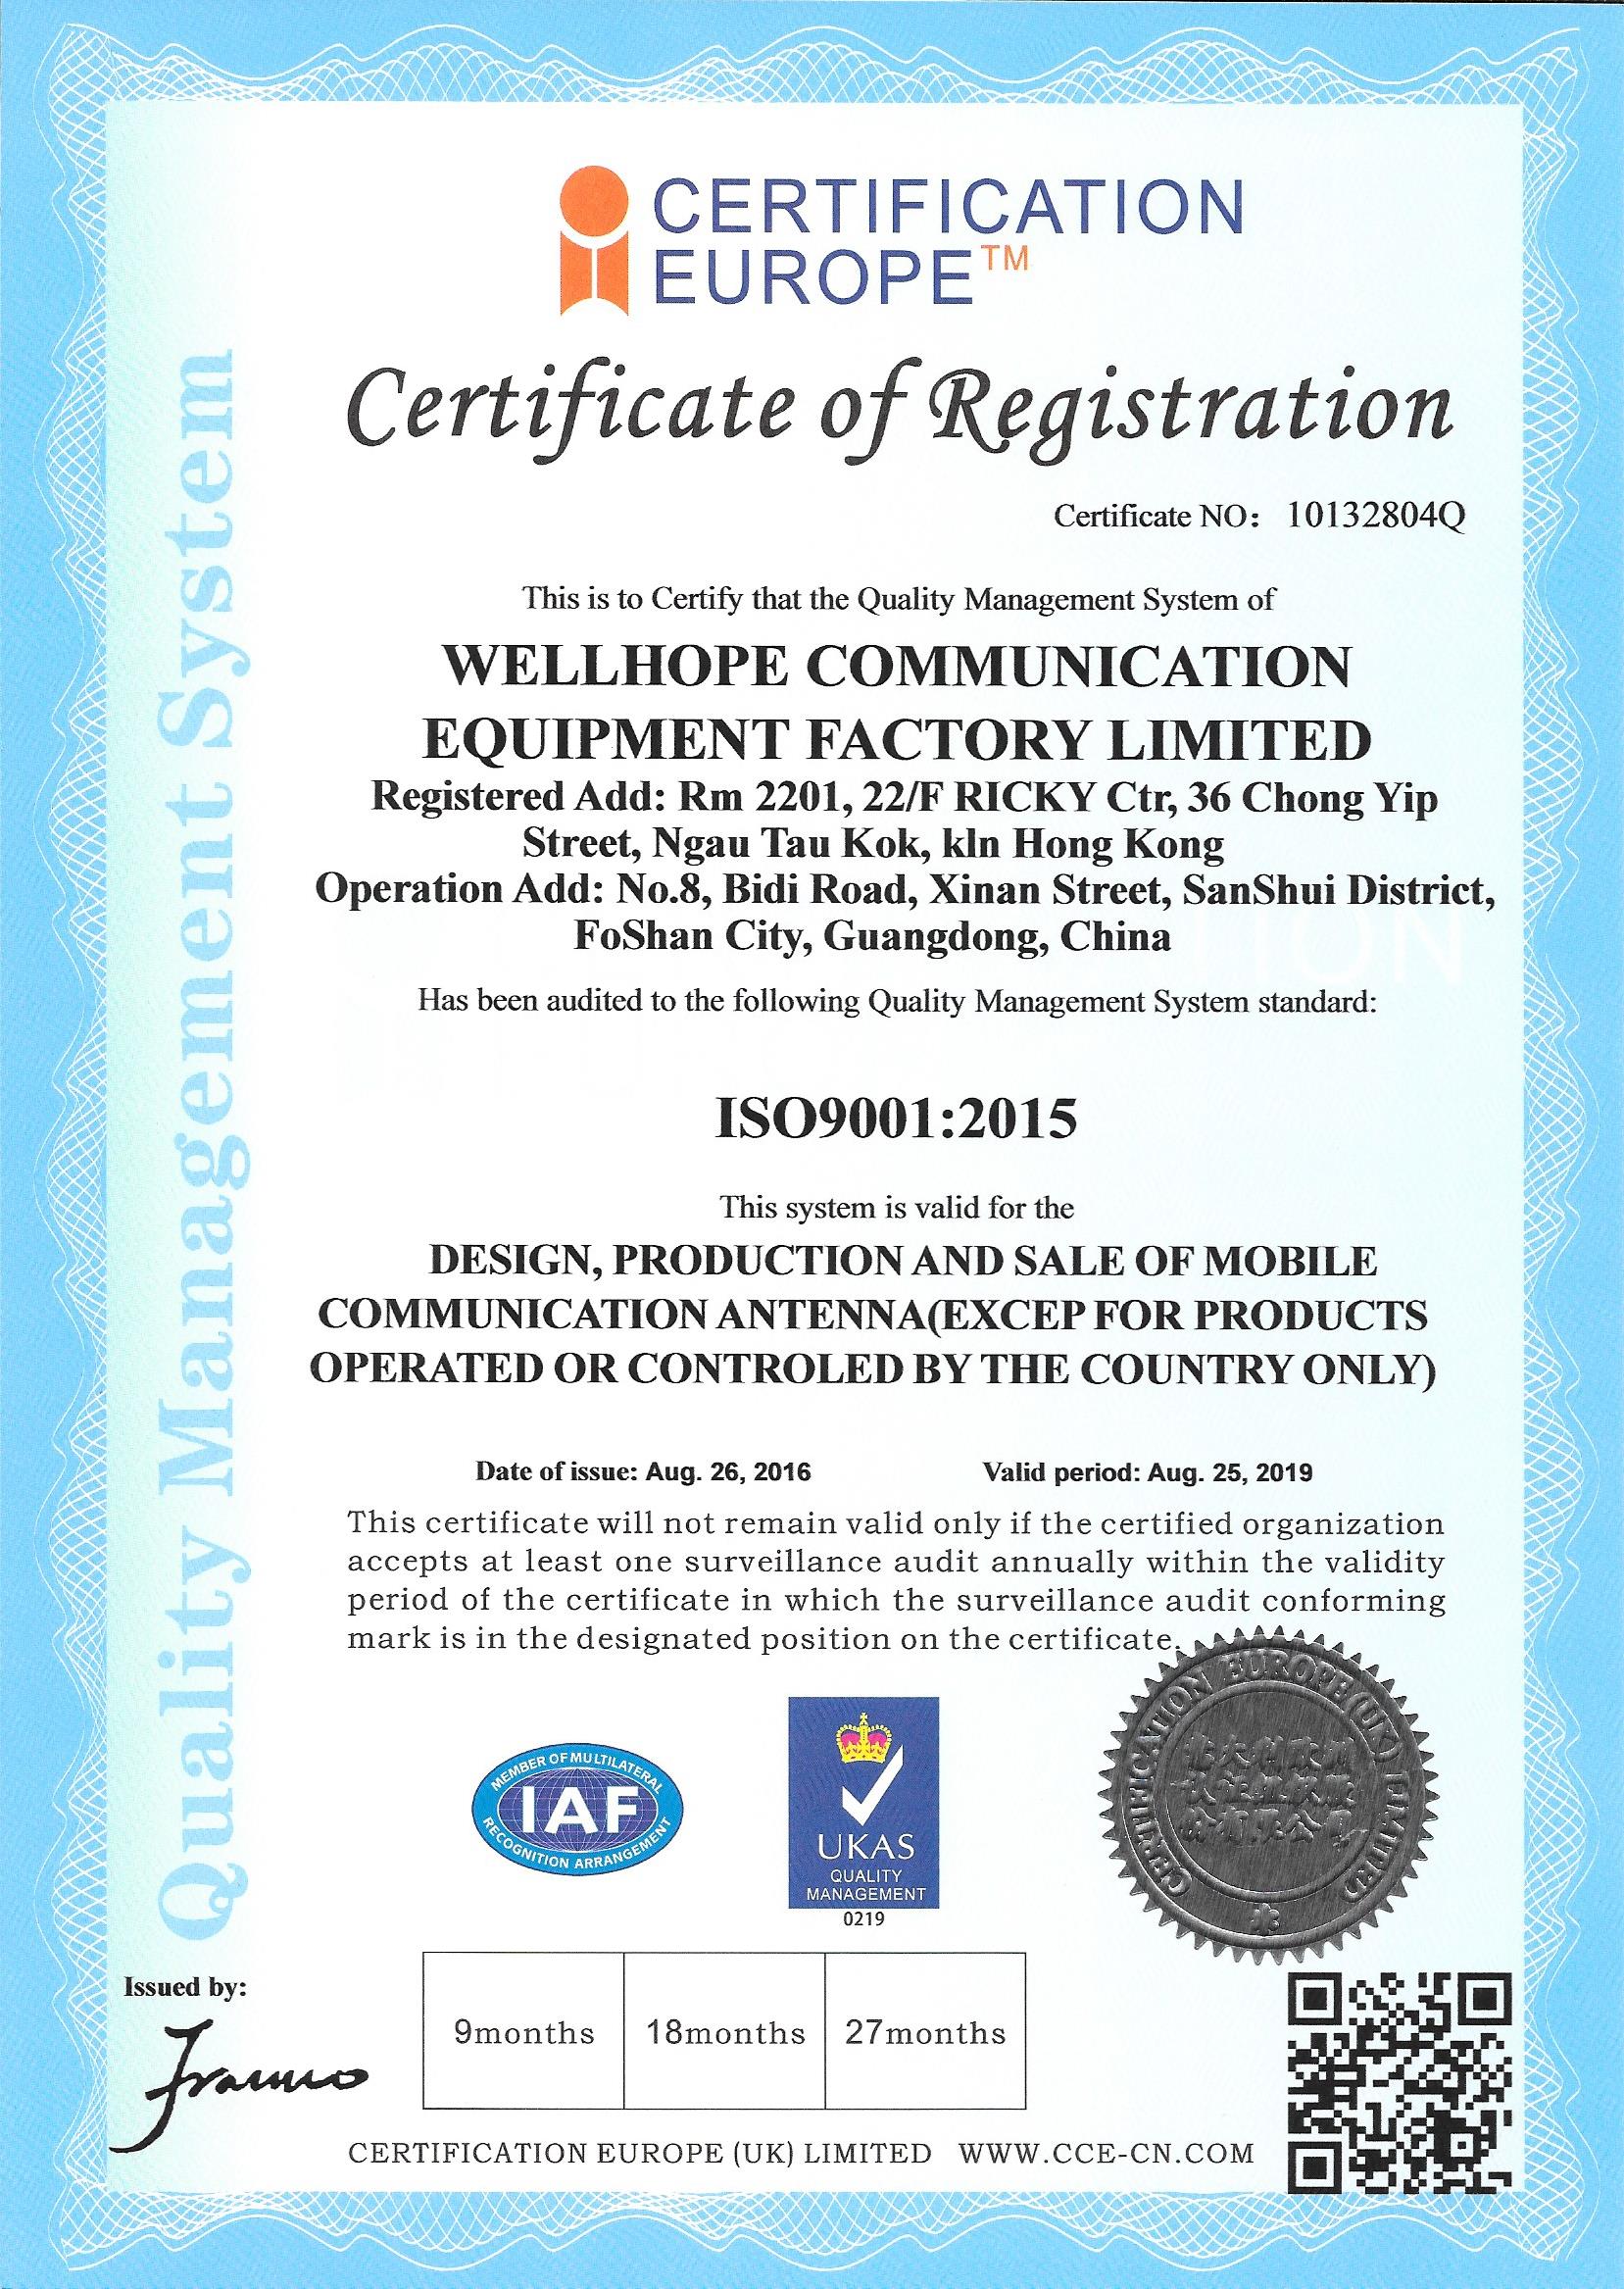   wellhope sans fil approuver par ISO9001